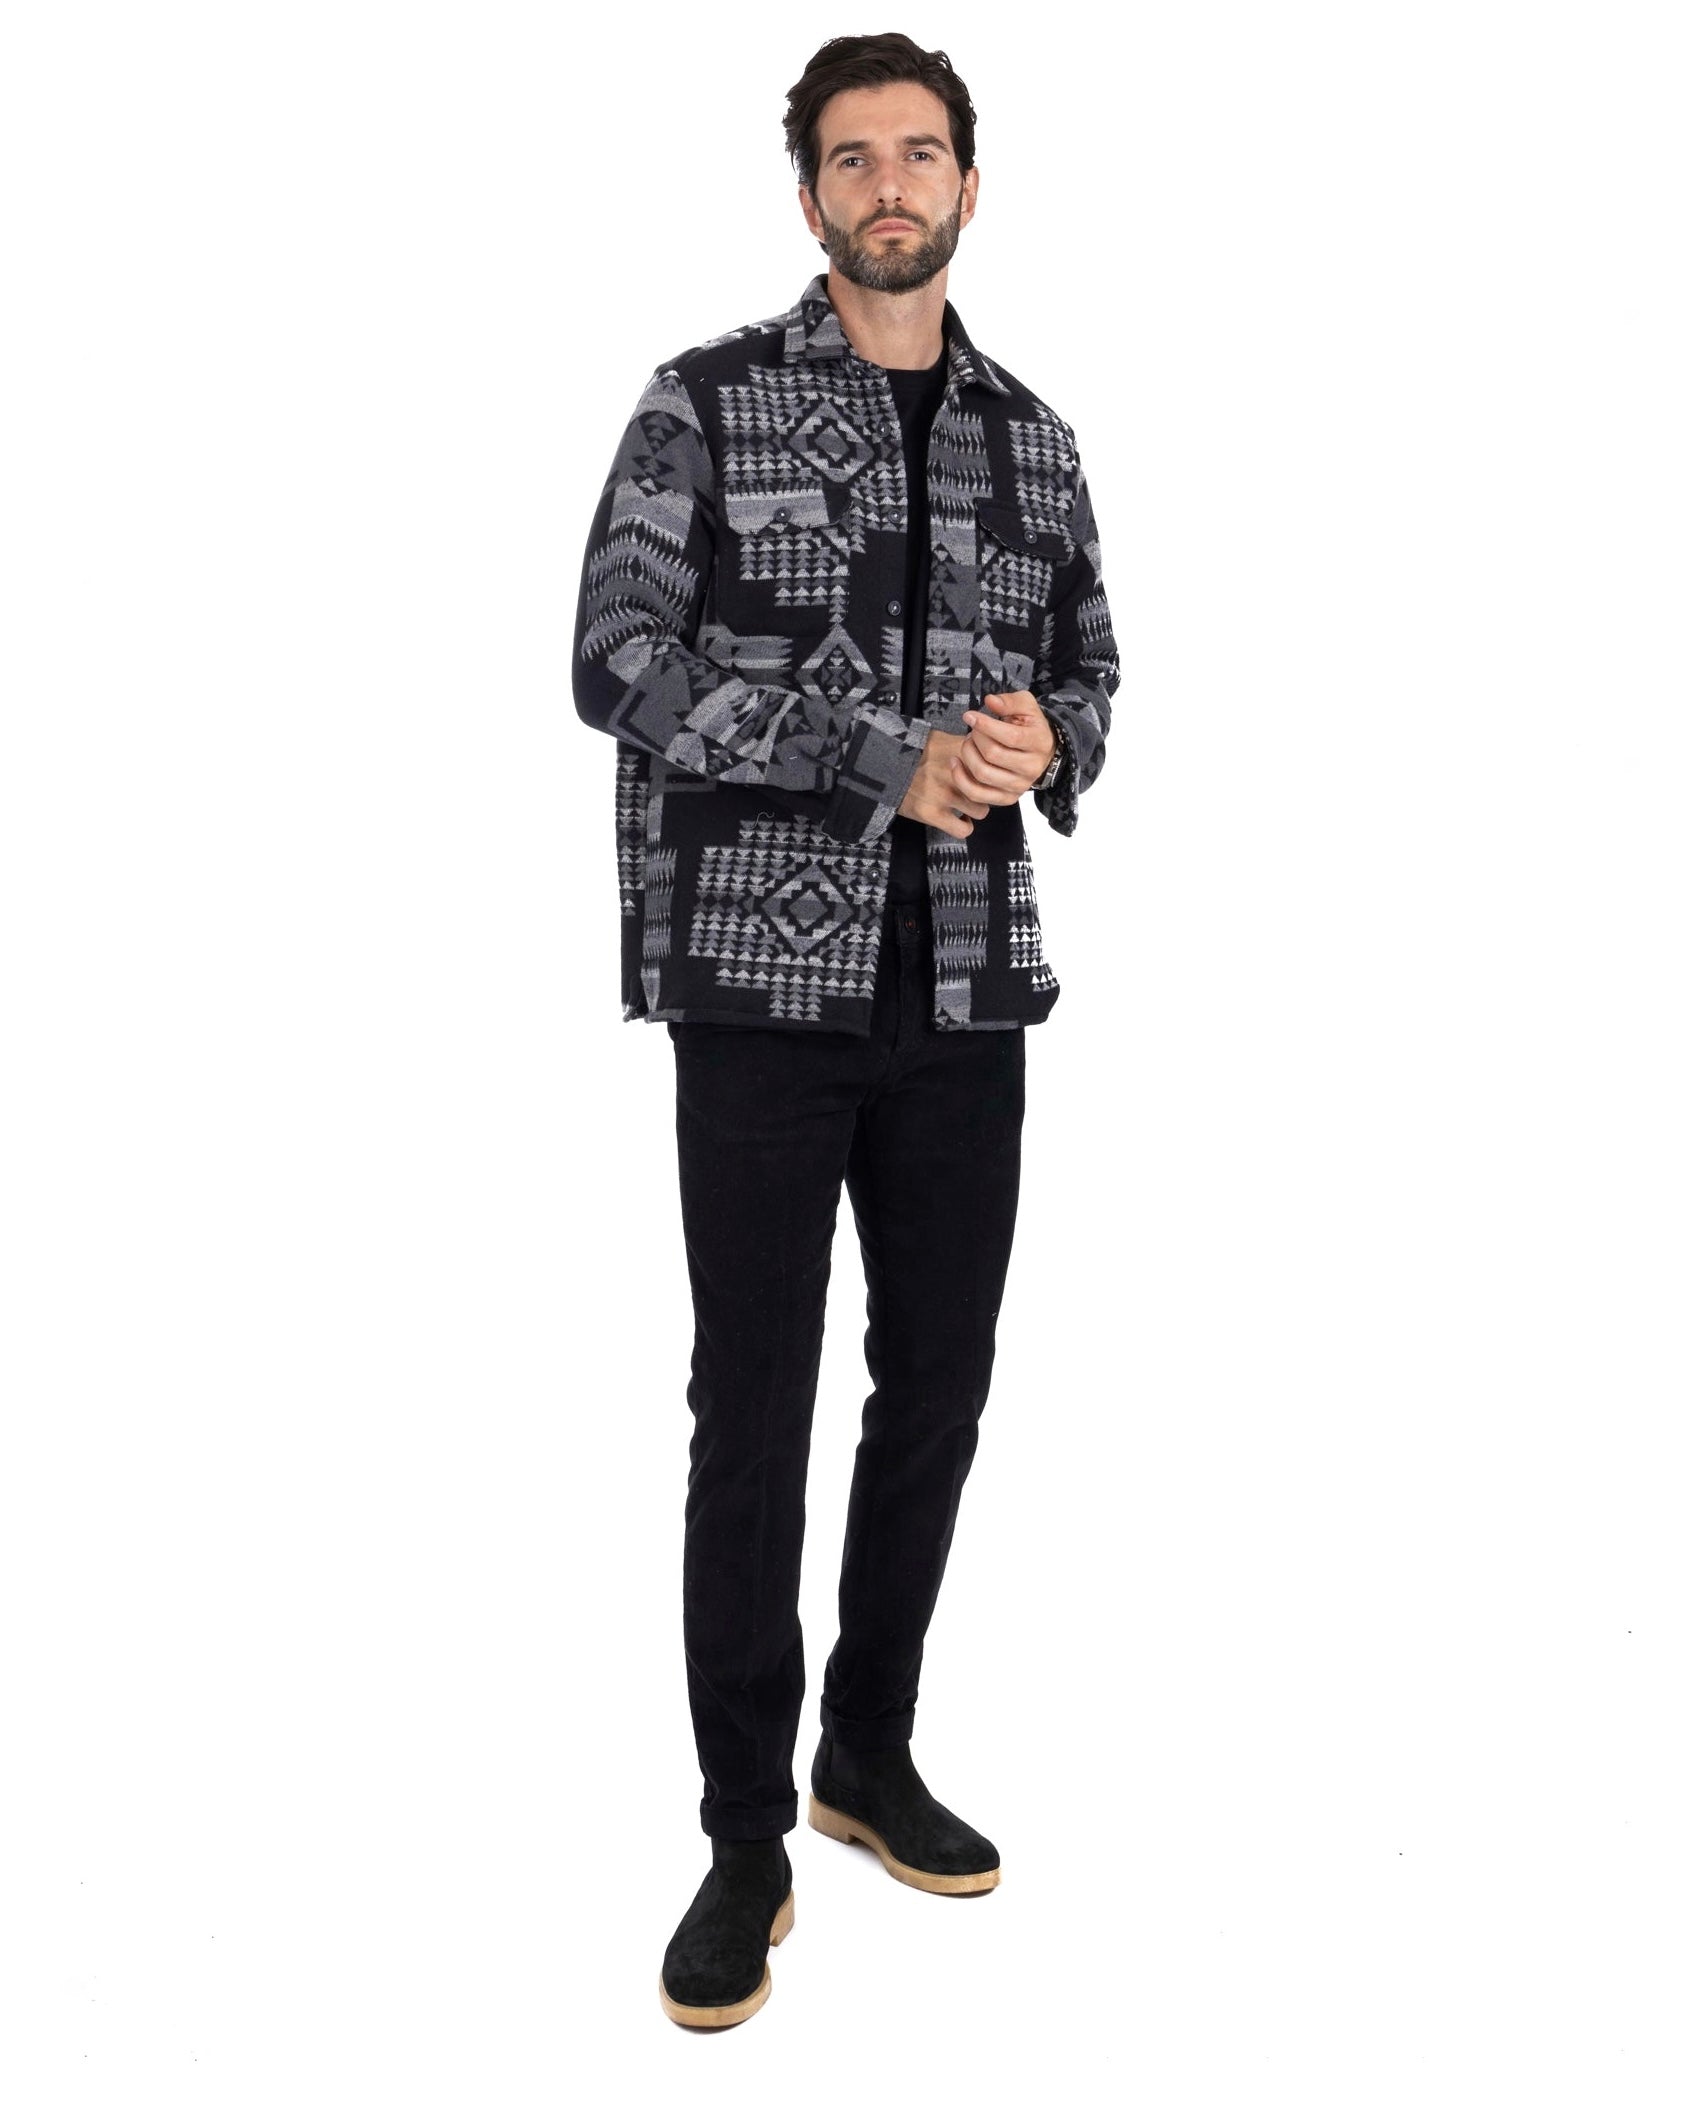 Mayor - black ethnic patterned jacket